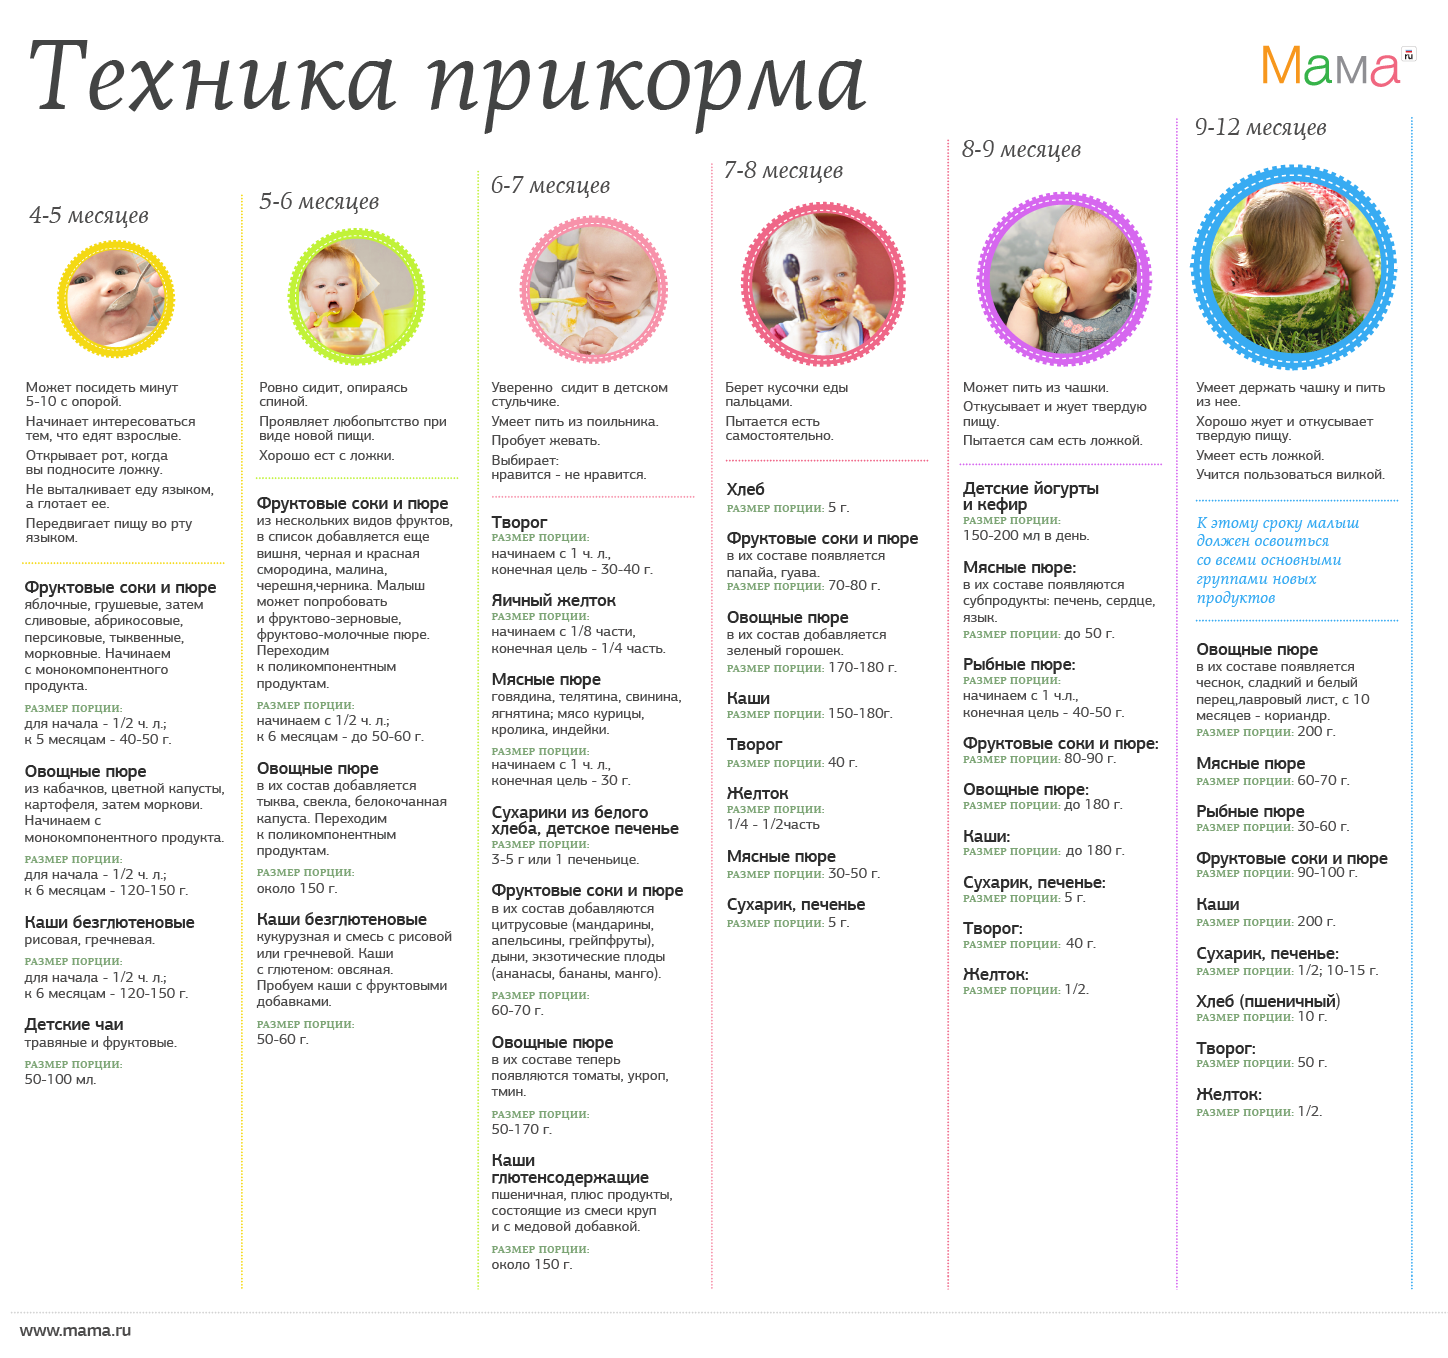 Прикорм в 5 месяцев: какие продукты можно давать ребенку